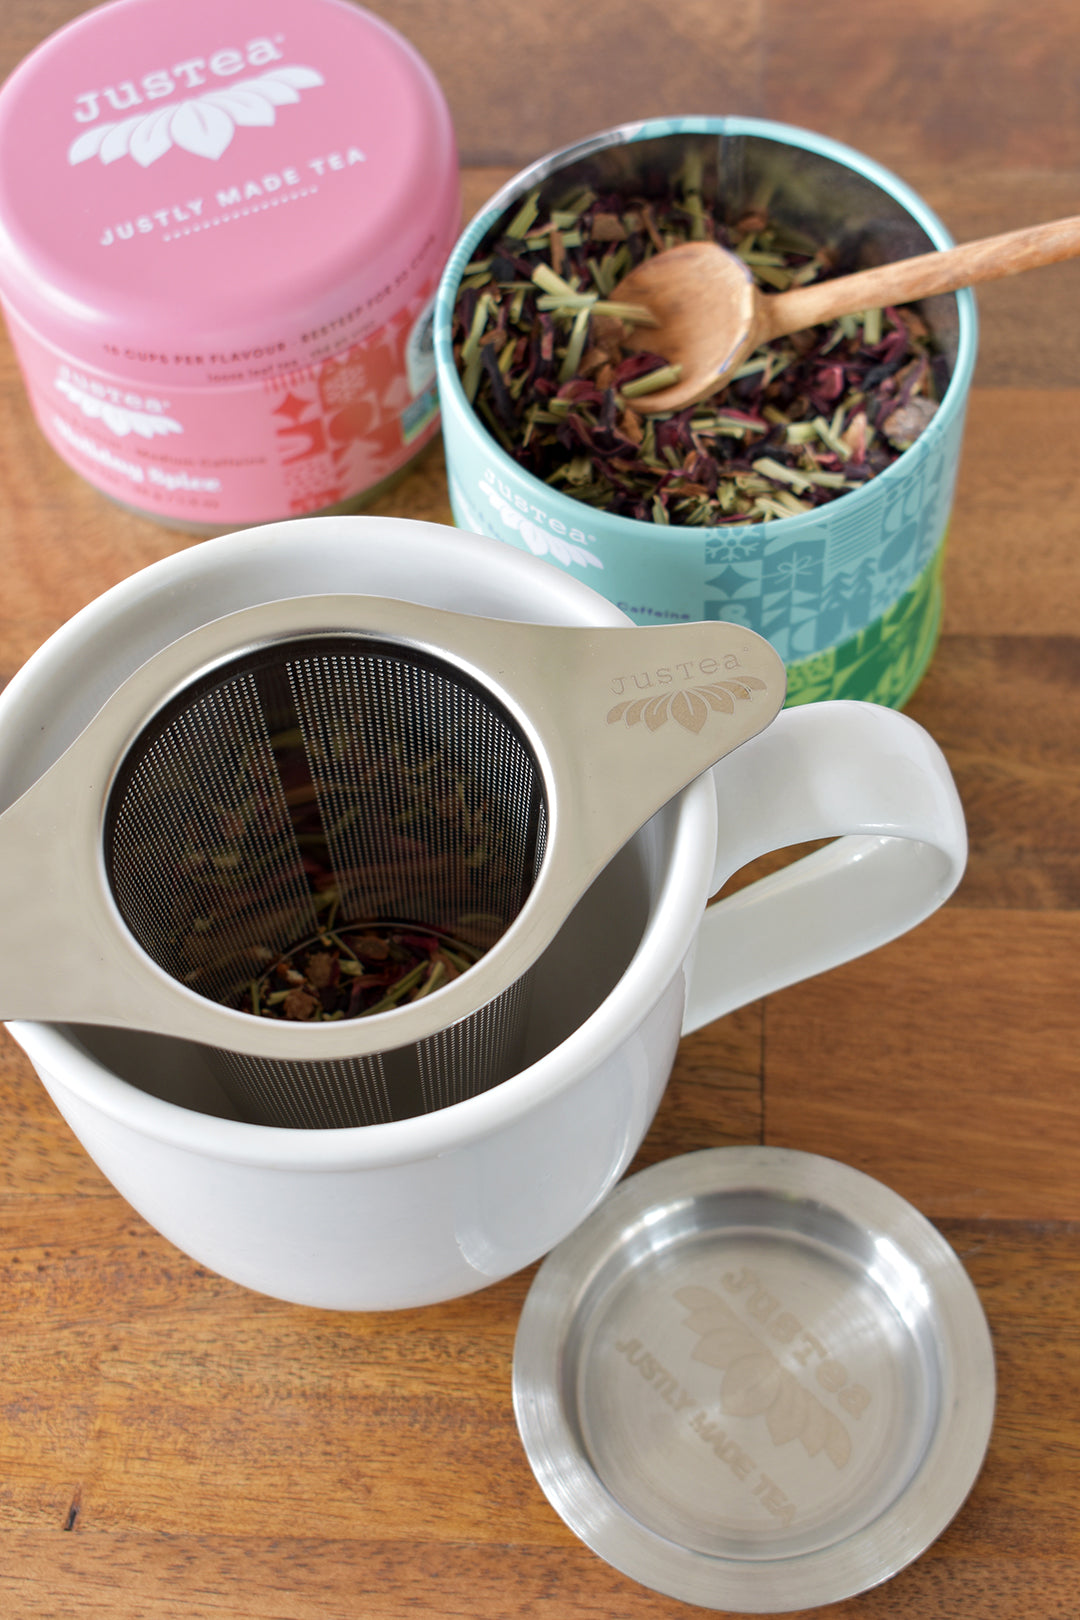 JusTea Loose Leaf Tea Infuser with Dual-Use Coaster Lid